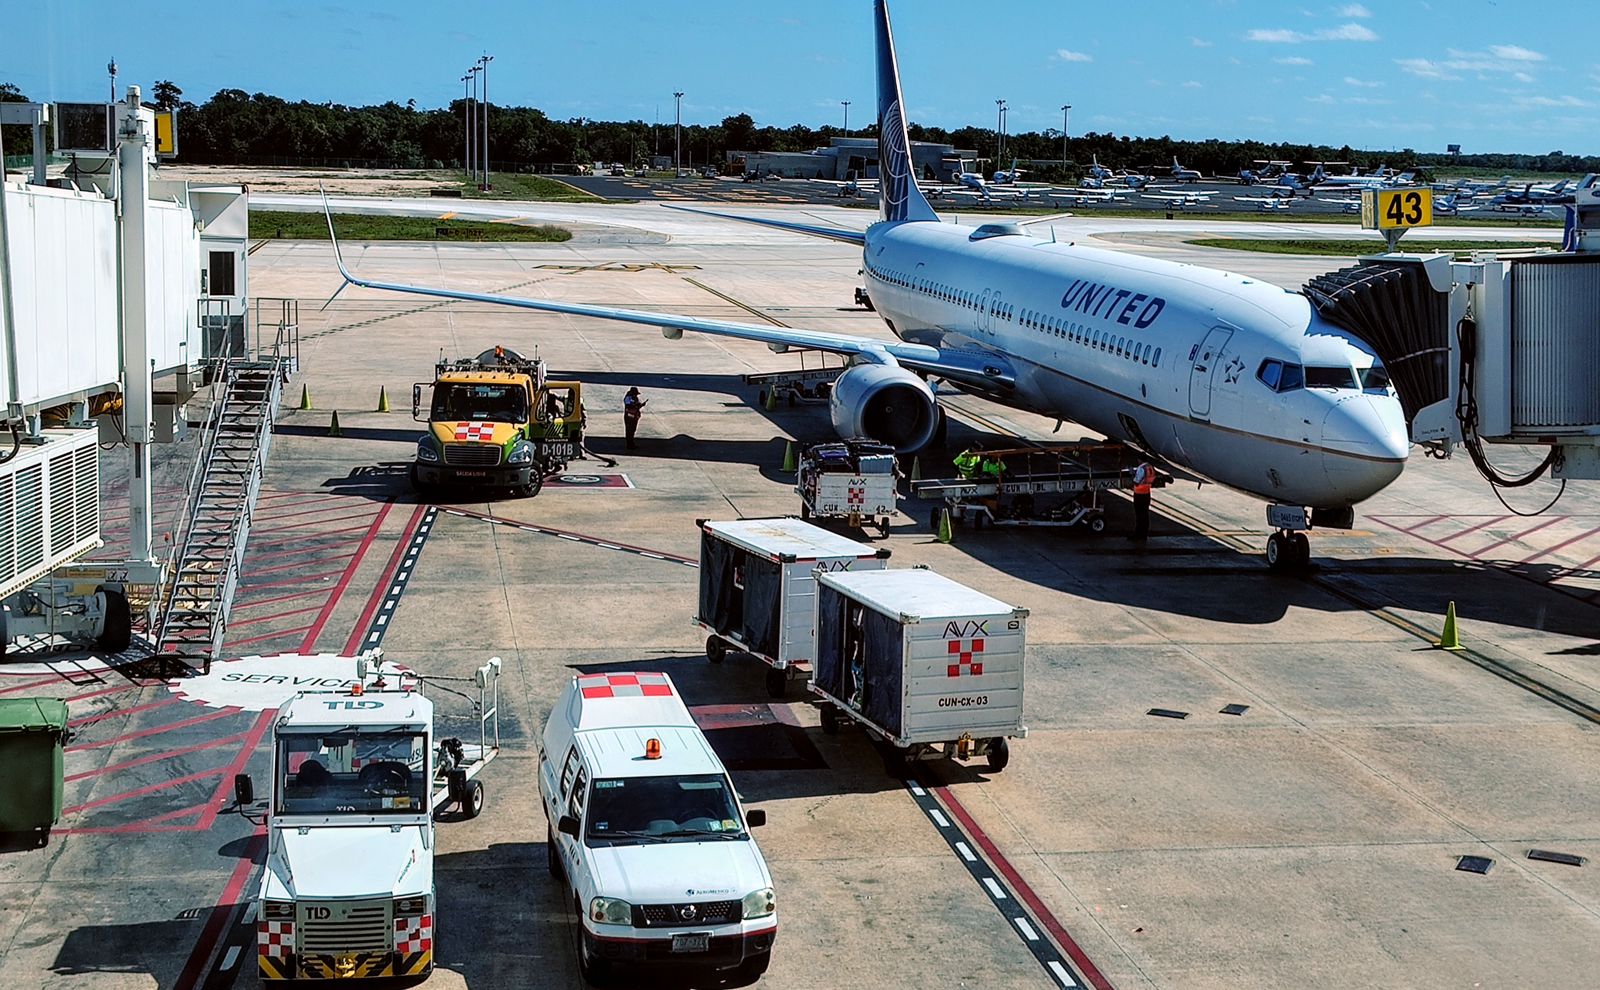 De acuerdo a Sectur los aeropuertos de Quintana Roo recibieron 370 mil 215 viajeros internacionales más respecto al primer trimestre del año anterior. En conjunto abarcan una cuota de mercado de 72.7%